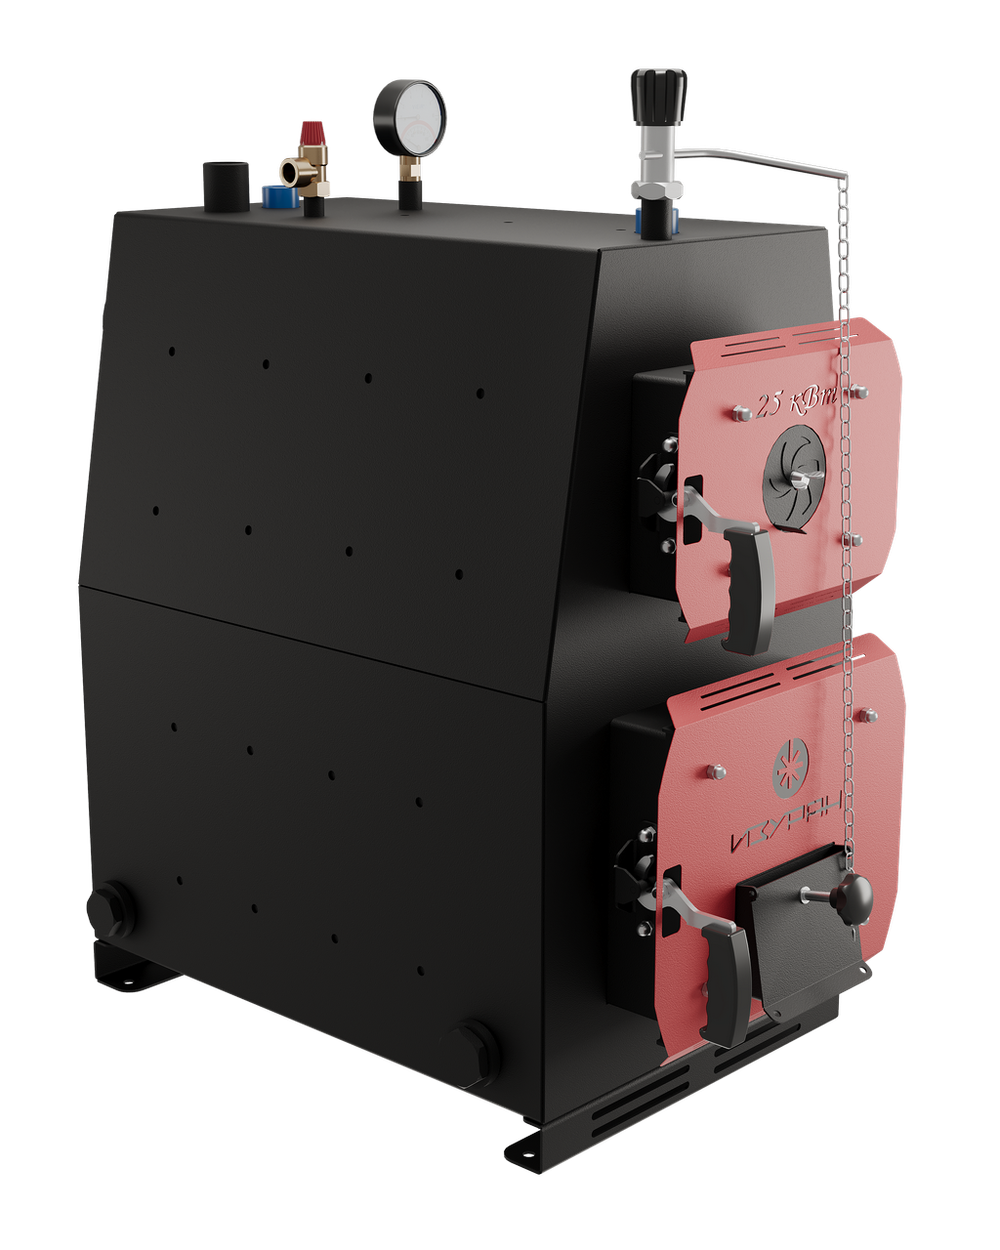 Твердотопливный котел длительного горения Изуран-16 на 16 кВт. Отапливаемое помещение до 432 куб.м. Производитель - Изуран